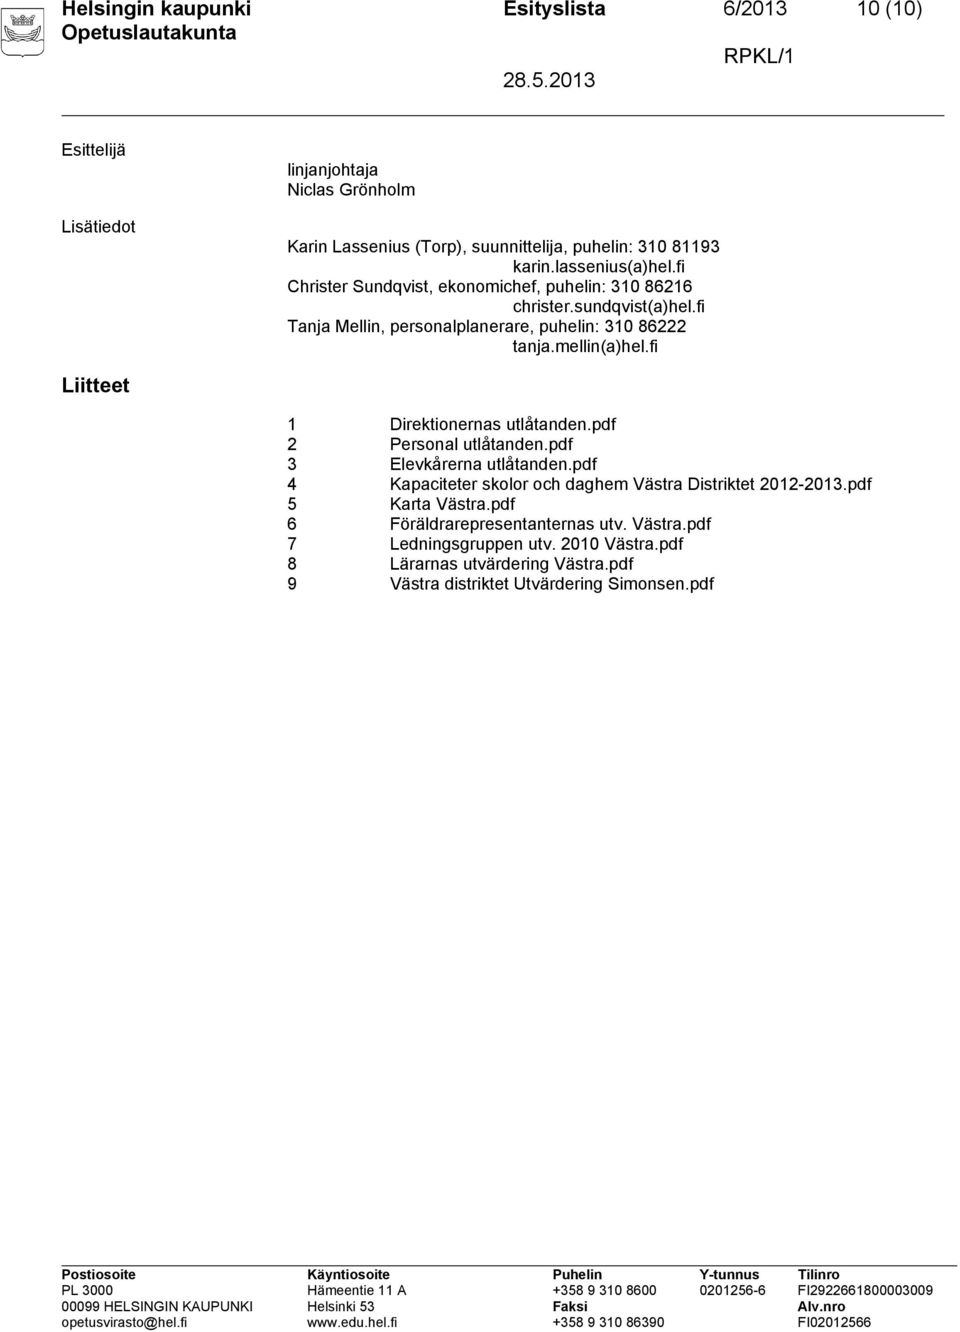 mellin(a)hel.fi Liitteet 1 Direktionernas utlåtanden.pdf 2 Personal utlåtanden.pdf 3 Elevkårerna utlåtanden.